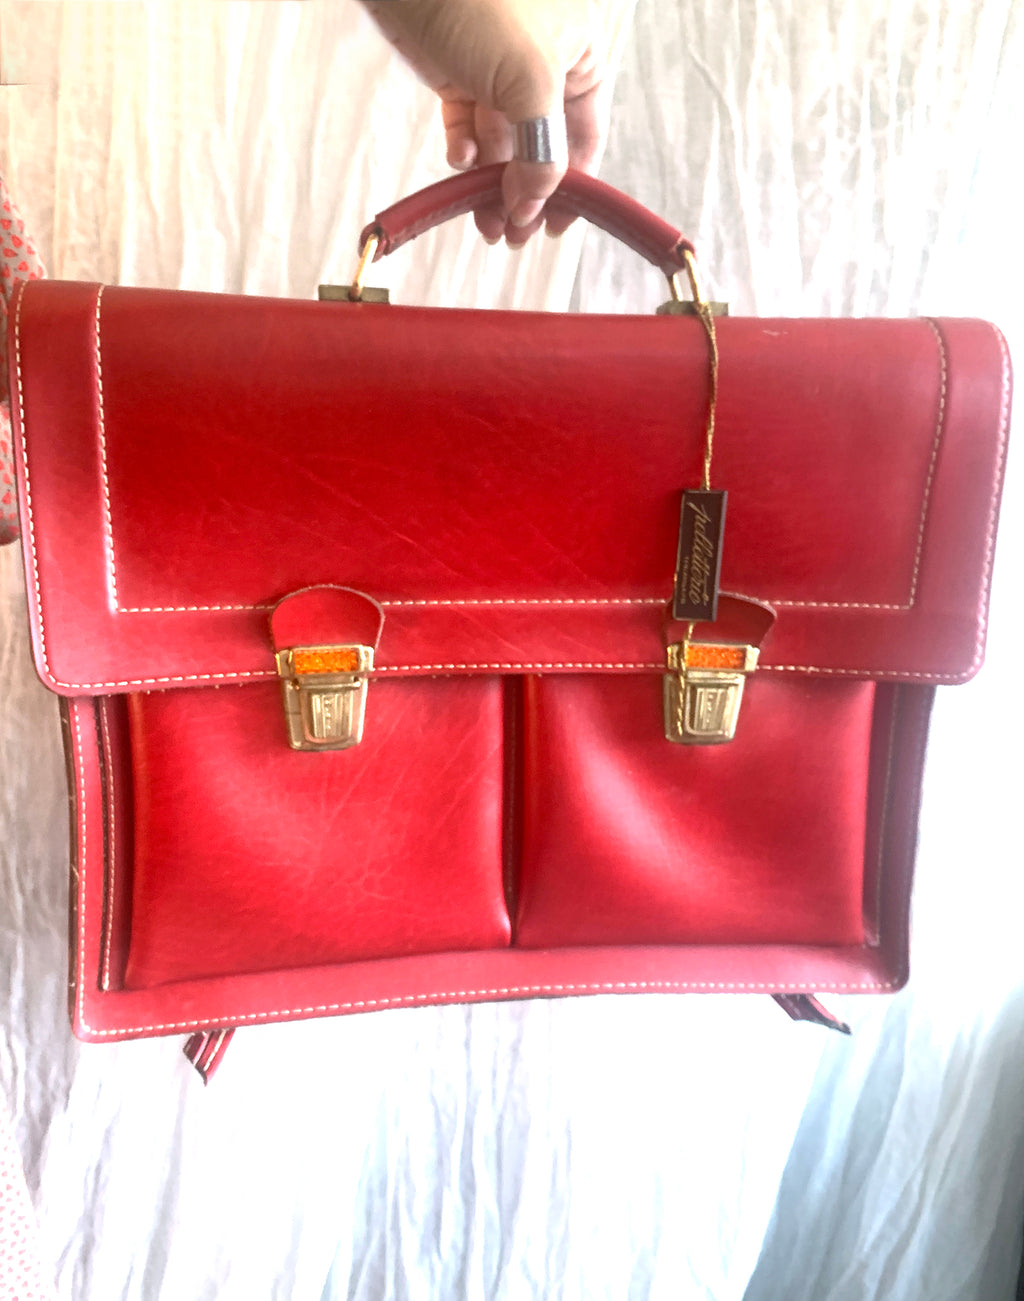 Pelletterie Italian Red Leather Satchel Bag